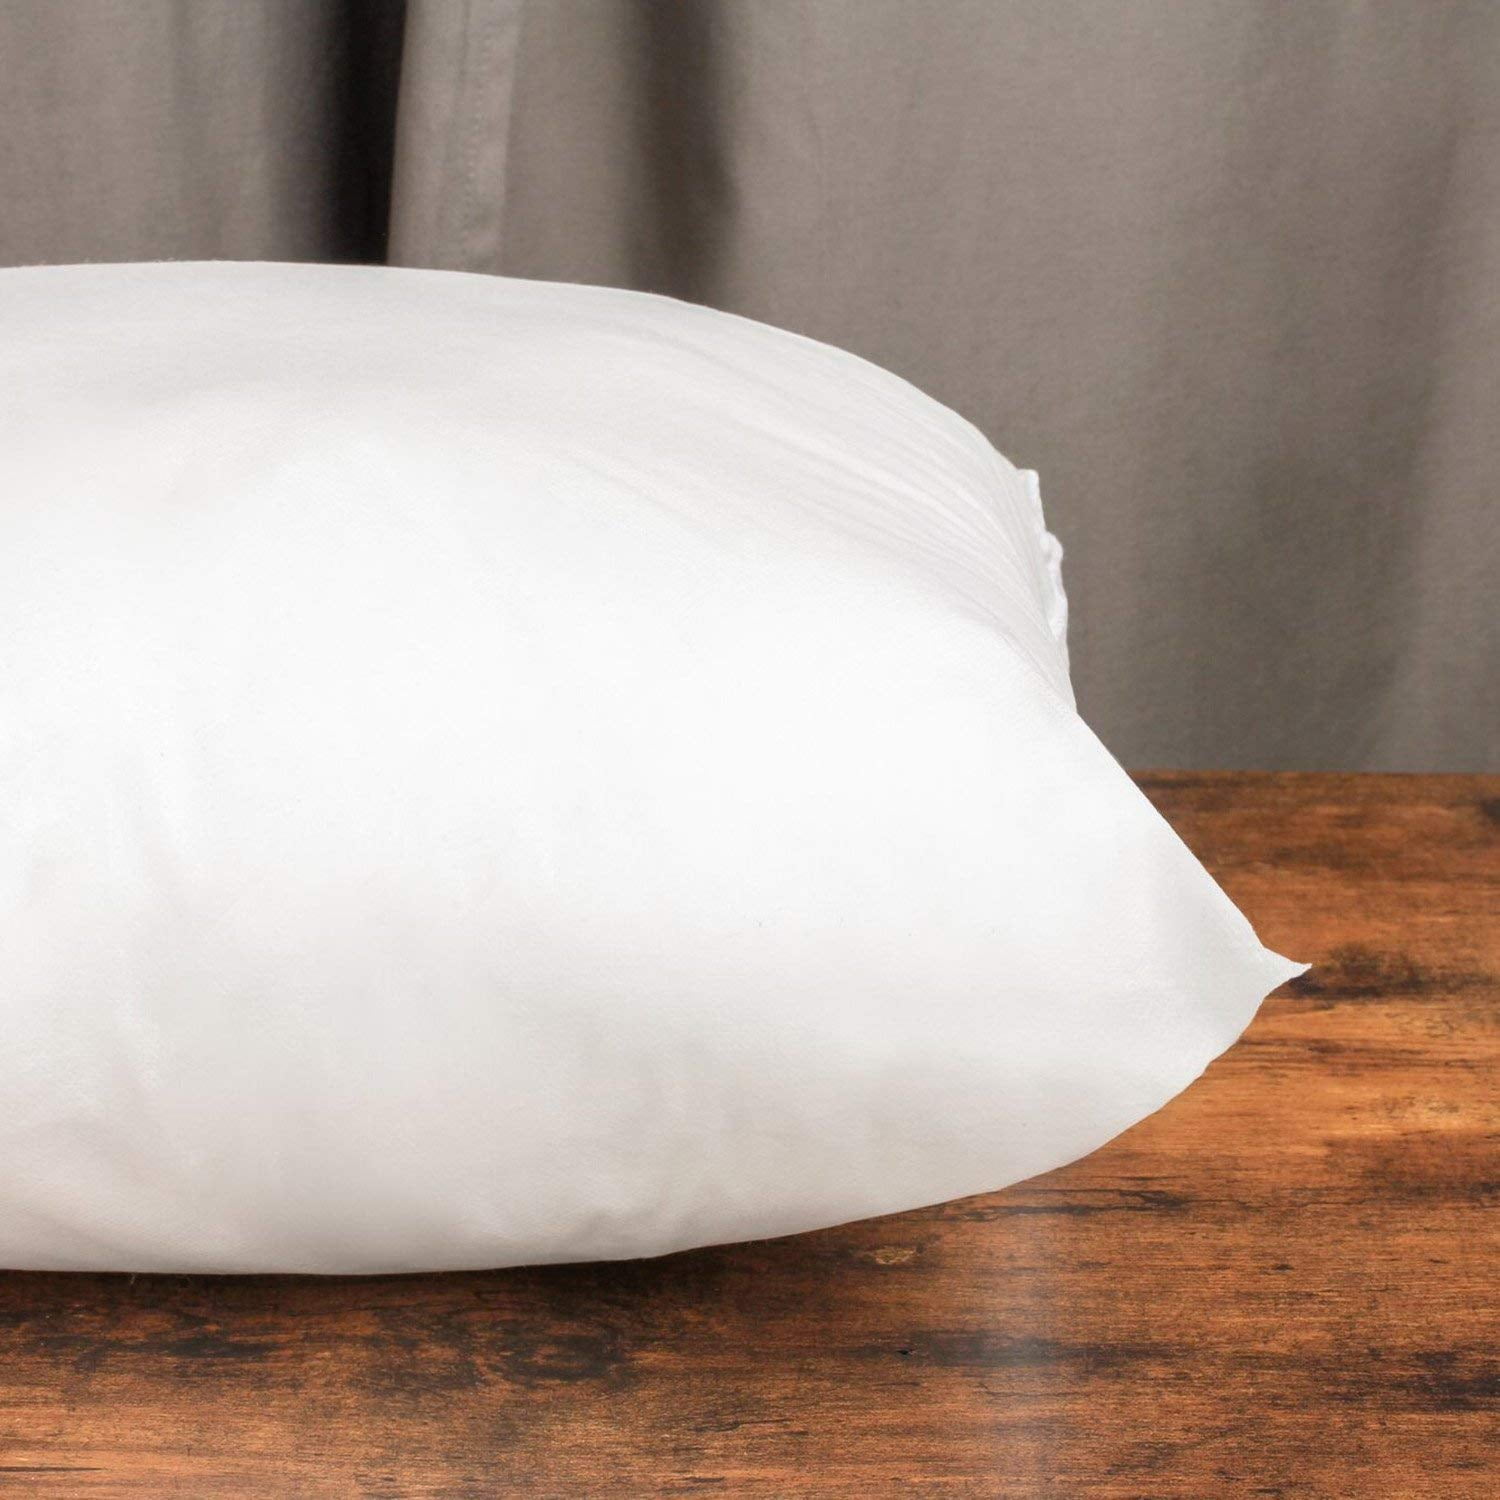  KAKABELL Throw Pillow Inserts Waterproof 18X18 Set of